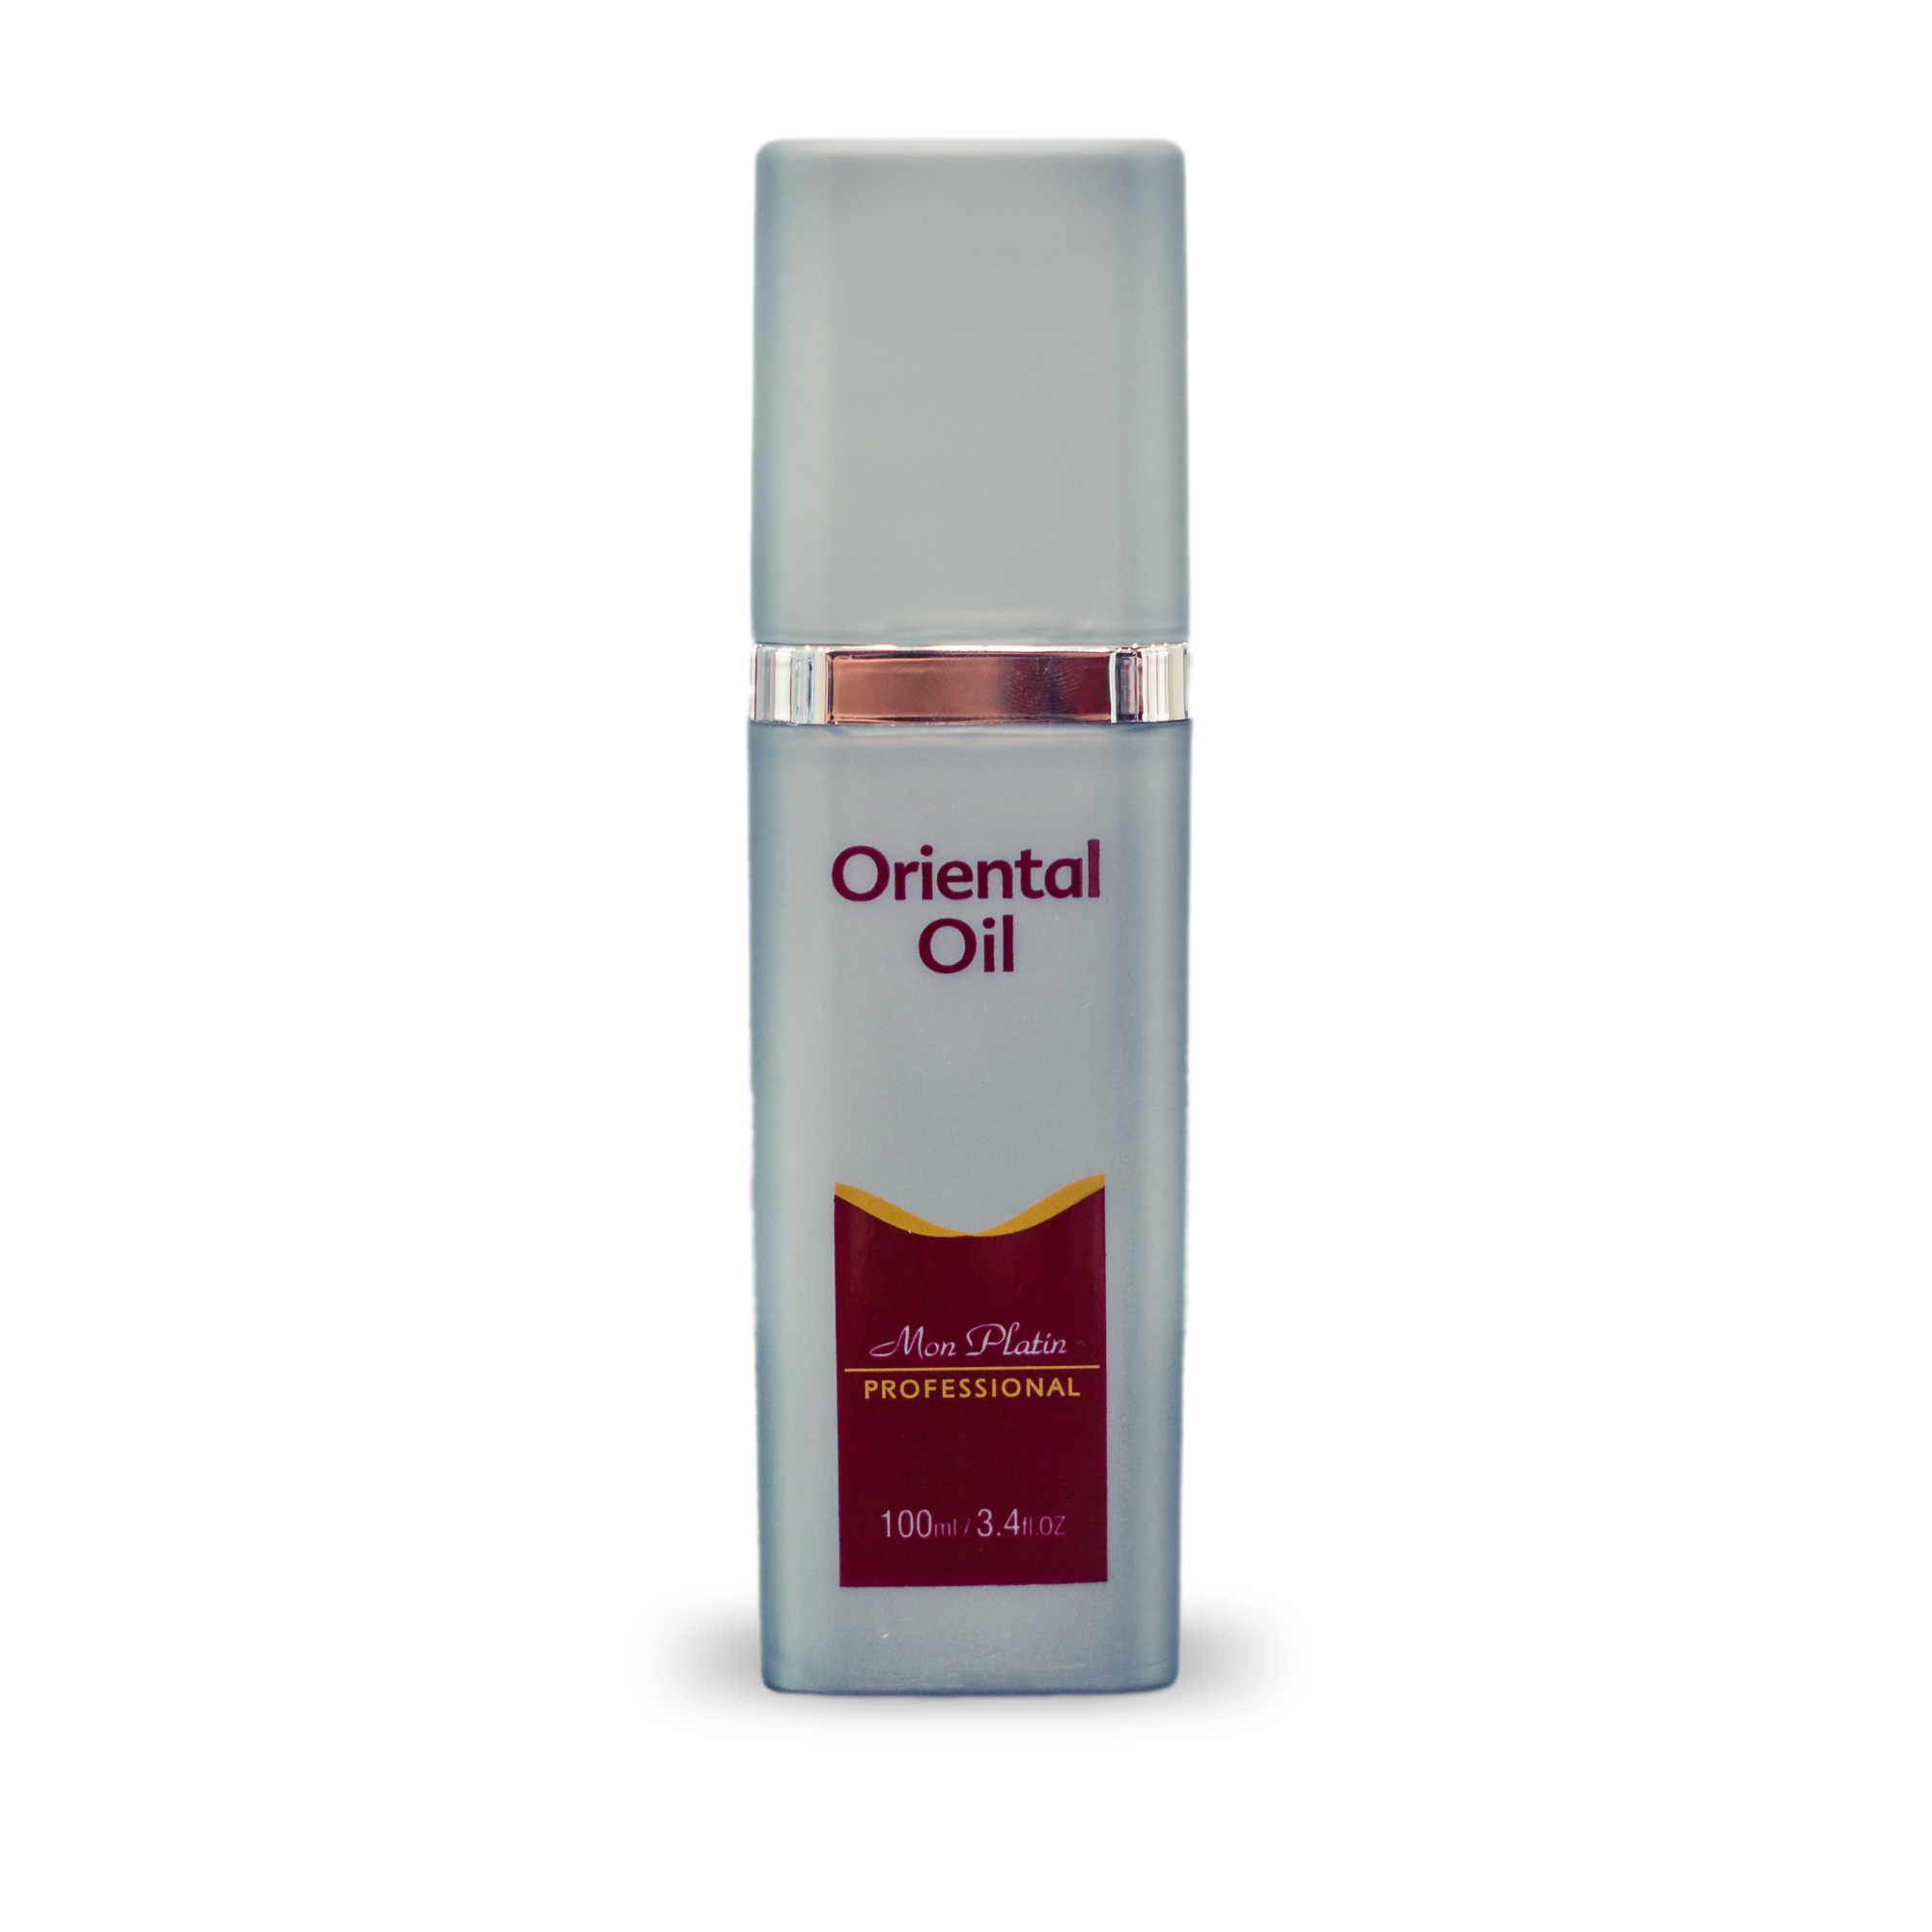 Восточное масло Mon Platin для питания и блеска волос Professional Oriental Oil, 100 мл состав для перманентной завивки для окрашенных и чувств волос 1b intech